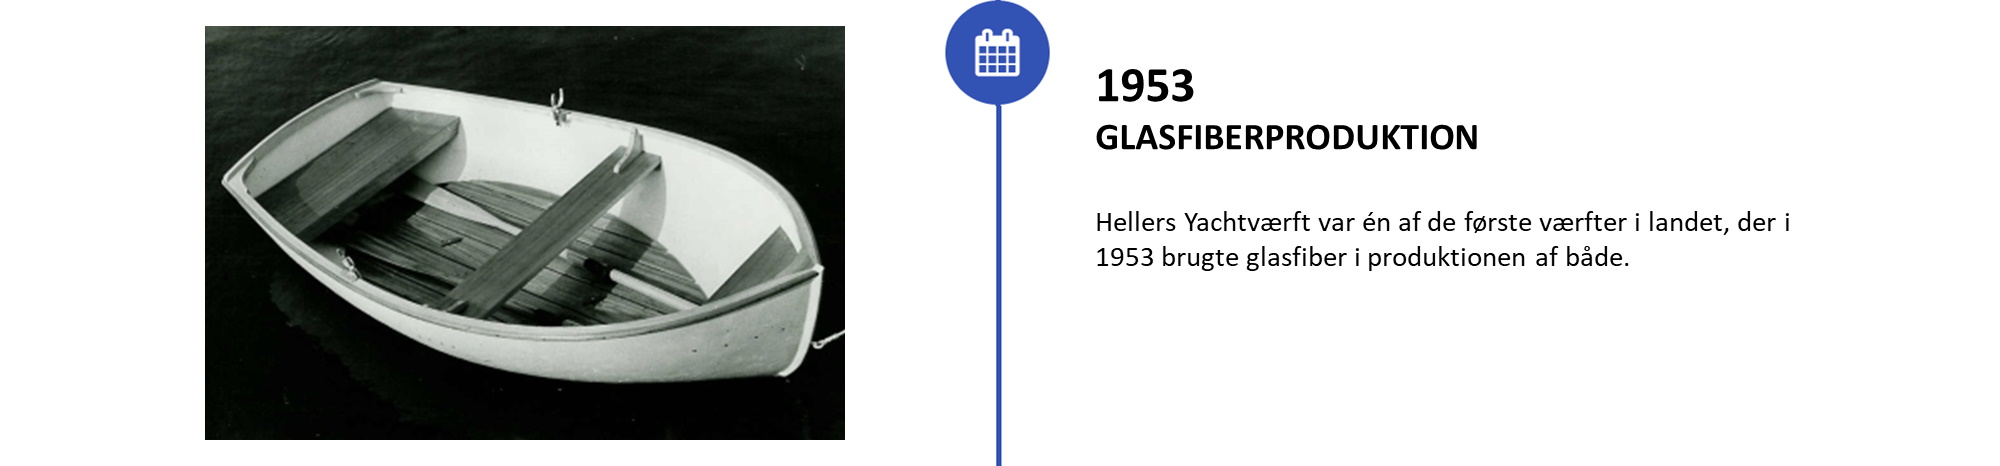 Glasfiberproduktion startet i 1953